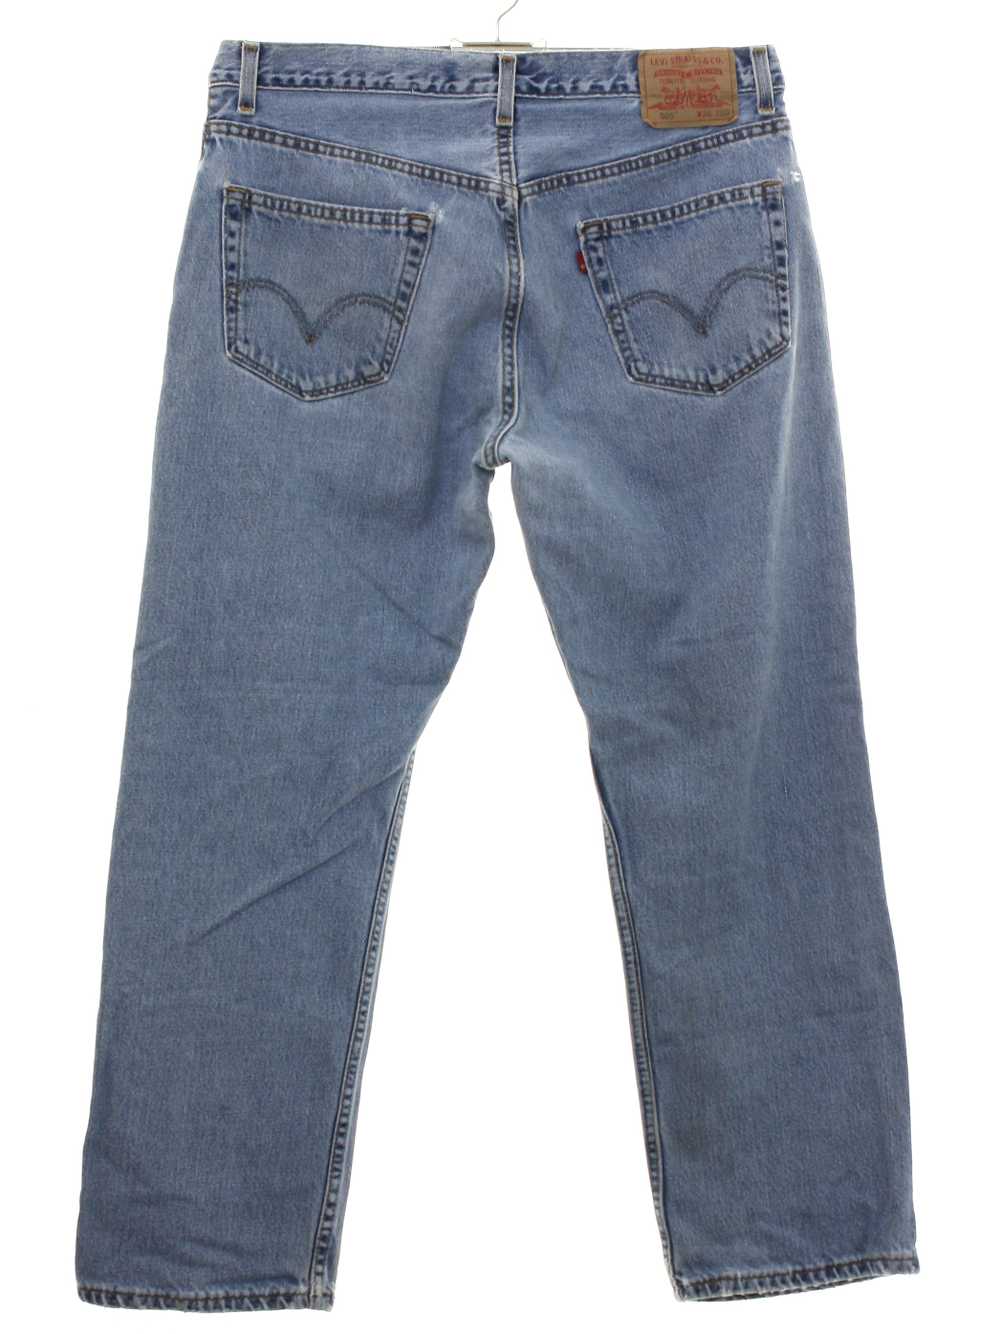 1990's Levis 505 Mens Levis 505 Denim Jeans Pants - image 1